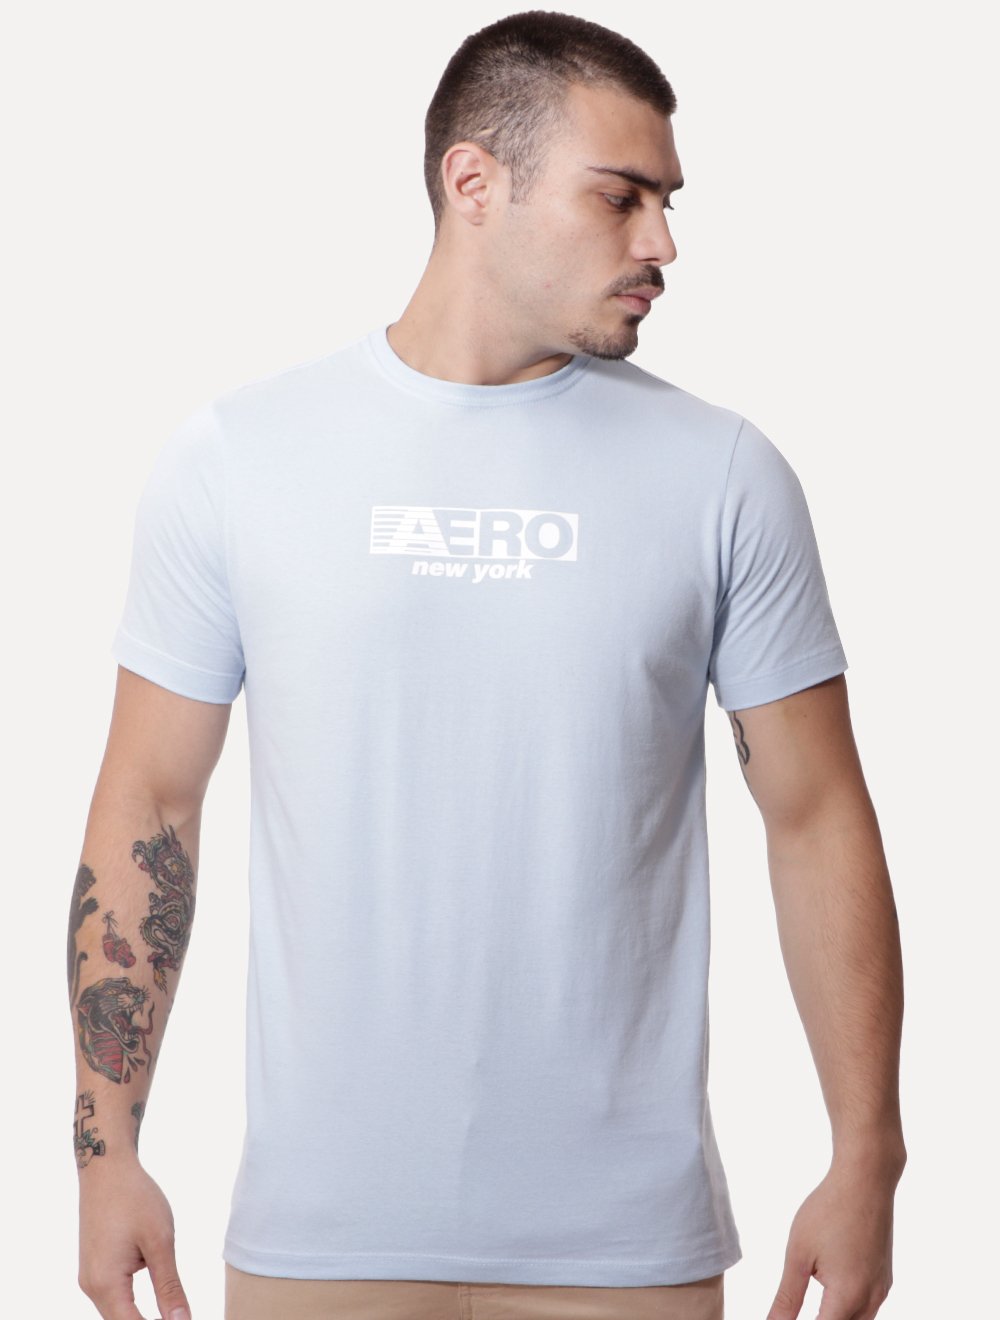 Camiseta Aeropostale Aero 87 Cor Preta - Sea Street ABC